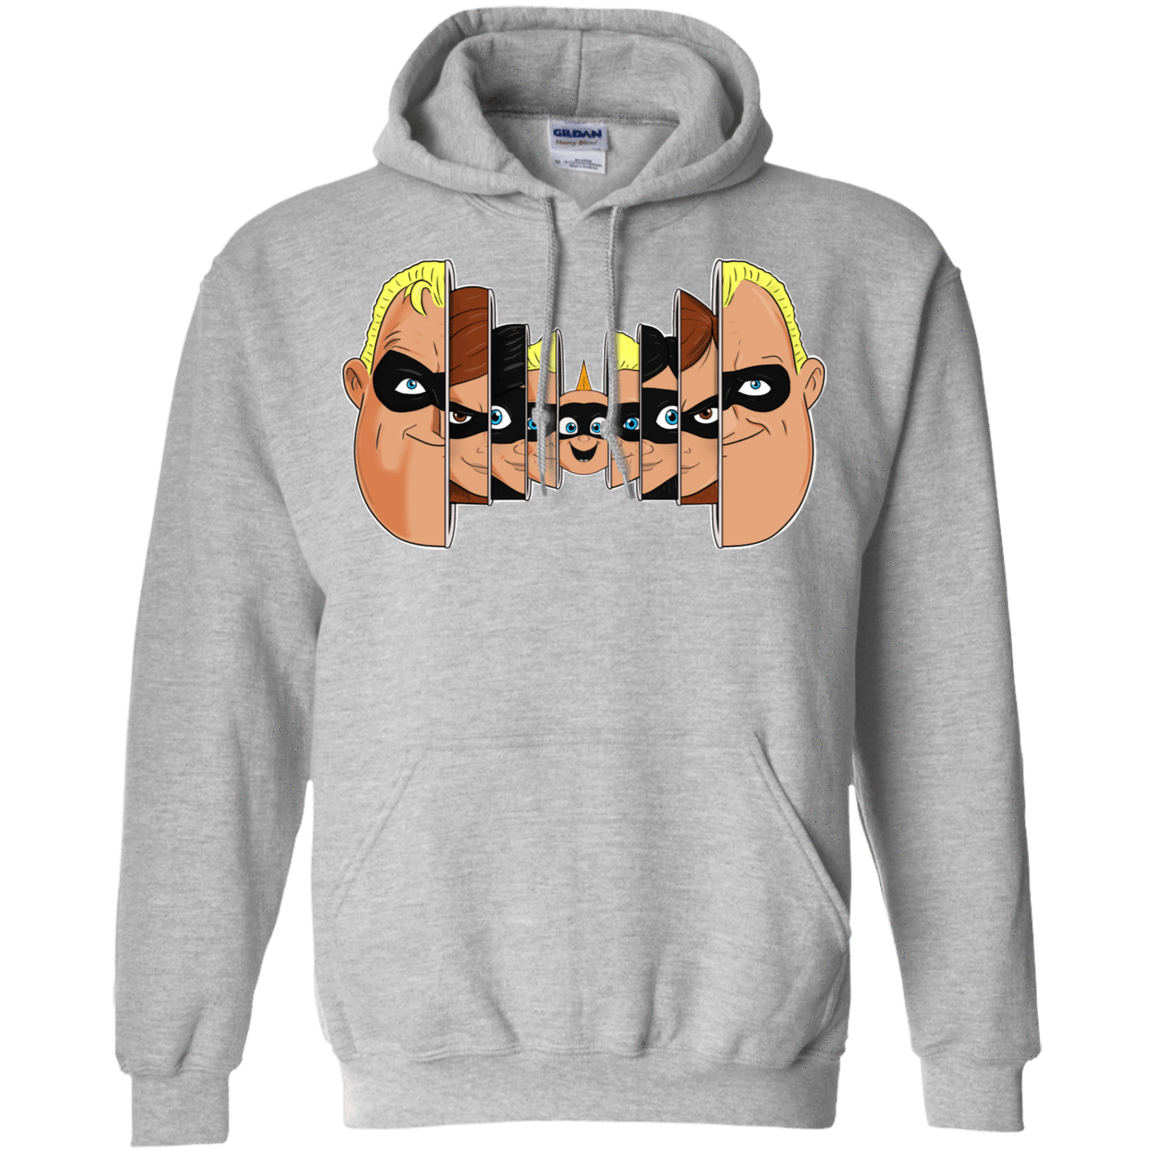 Sweatshirts Sport Grey / S Incredibles Pullover Hoodie